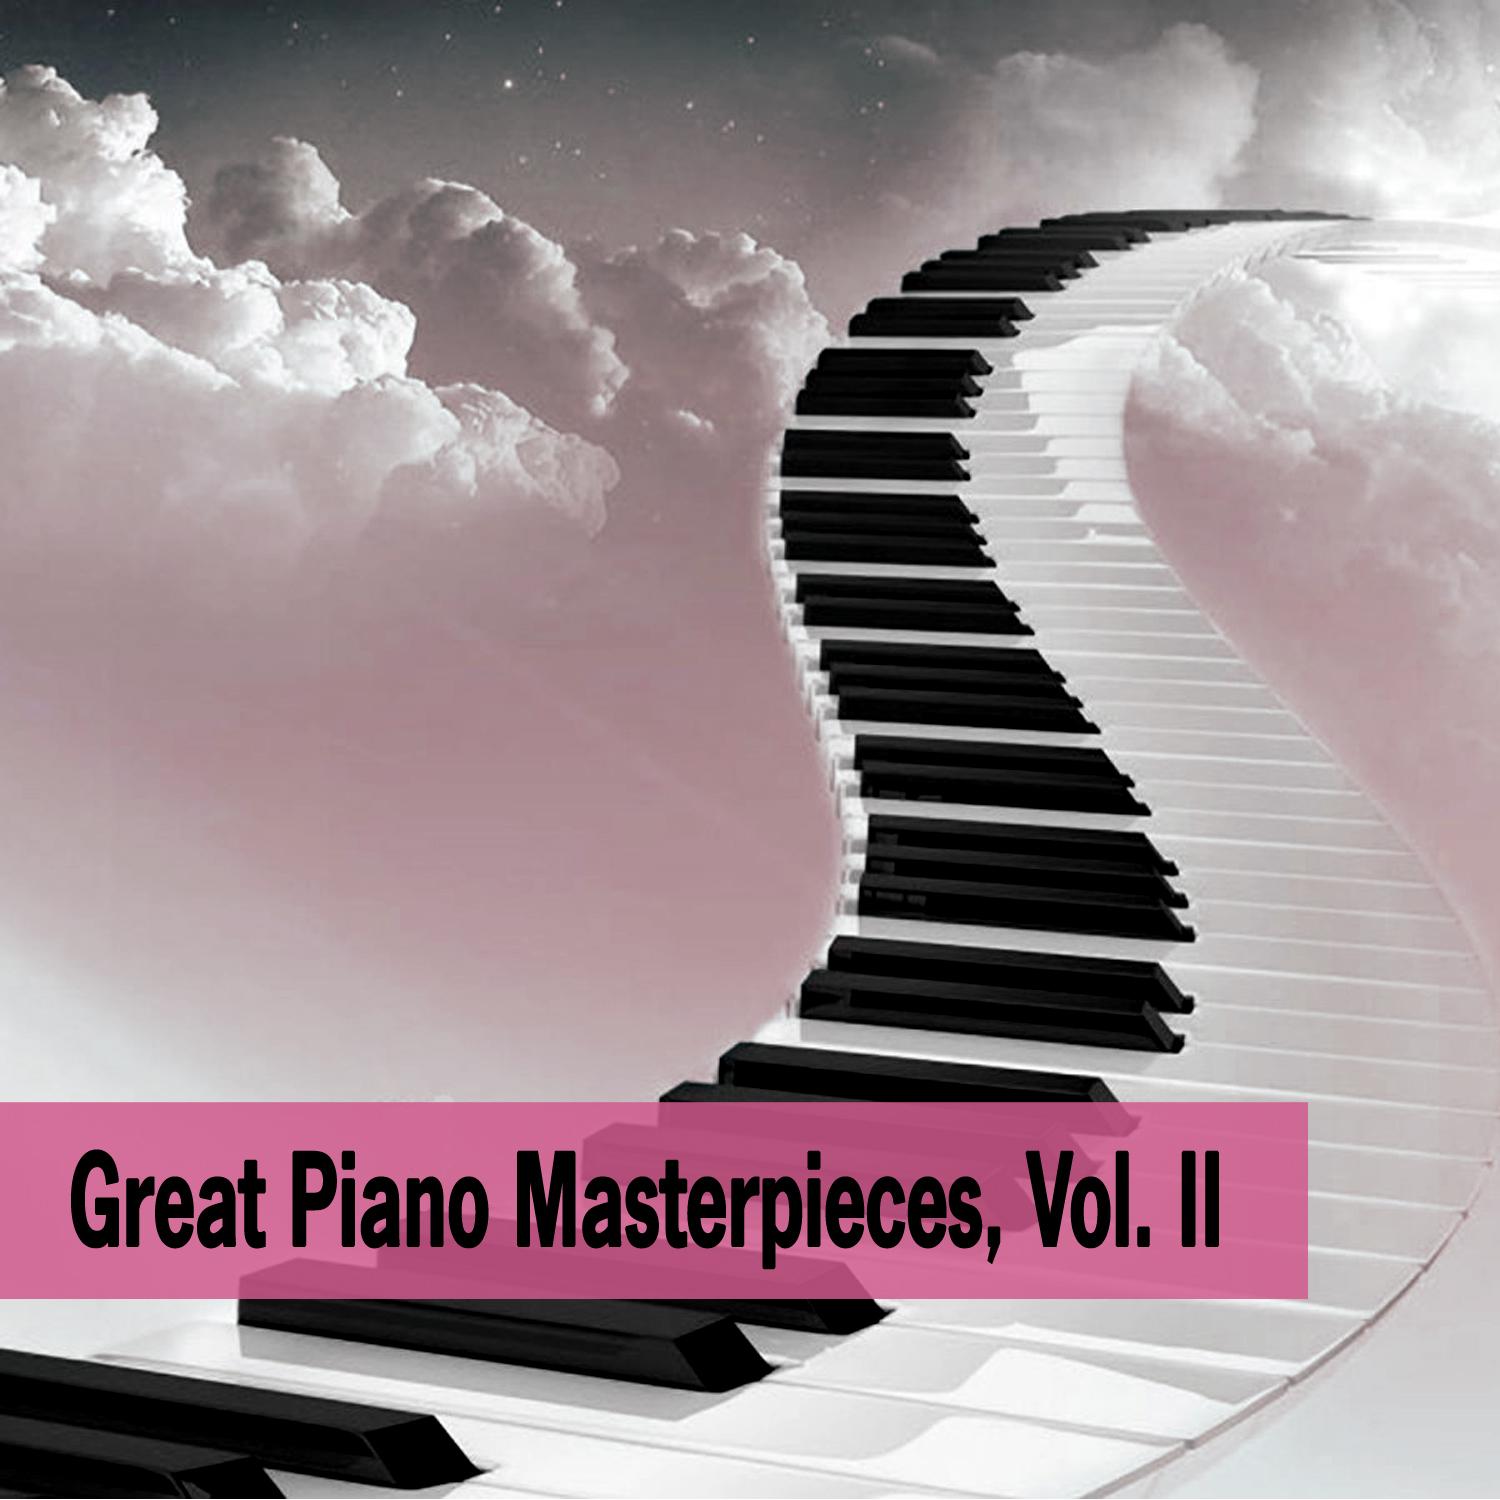 Great Piano Masterpieces, Vol. II